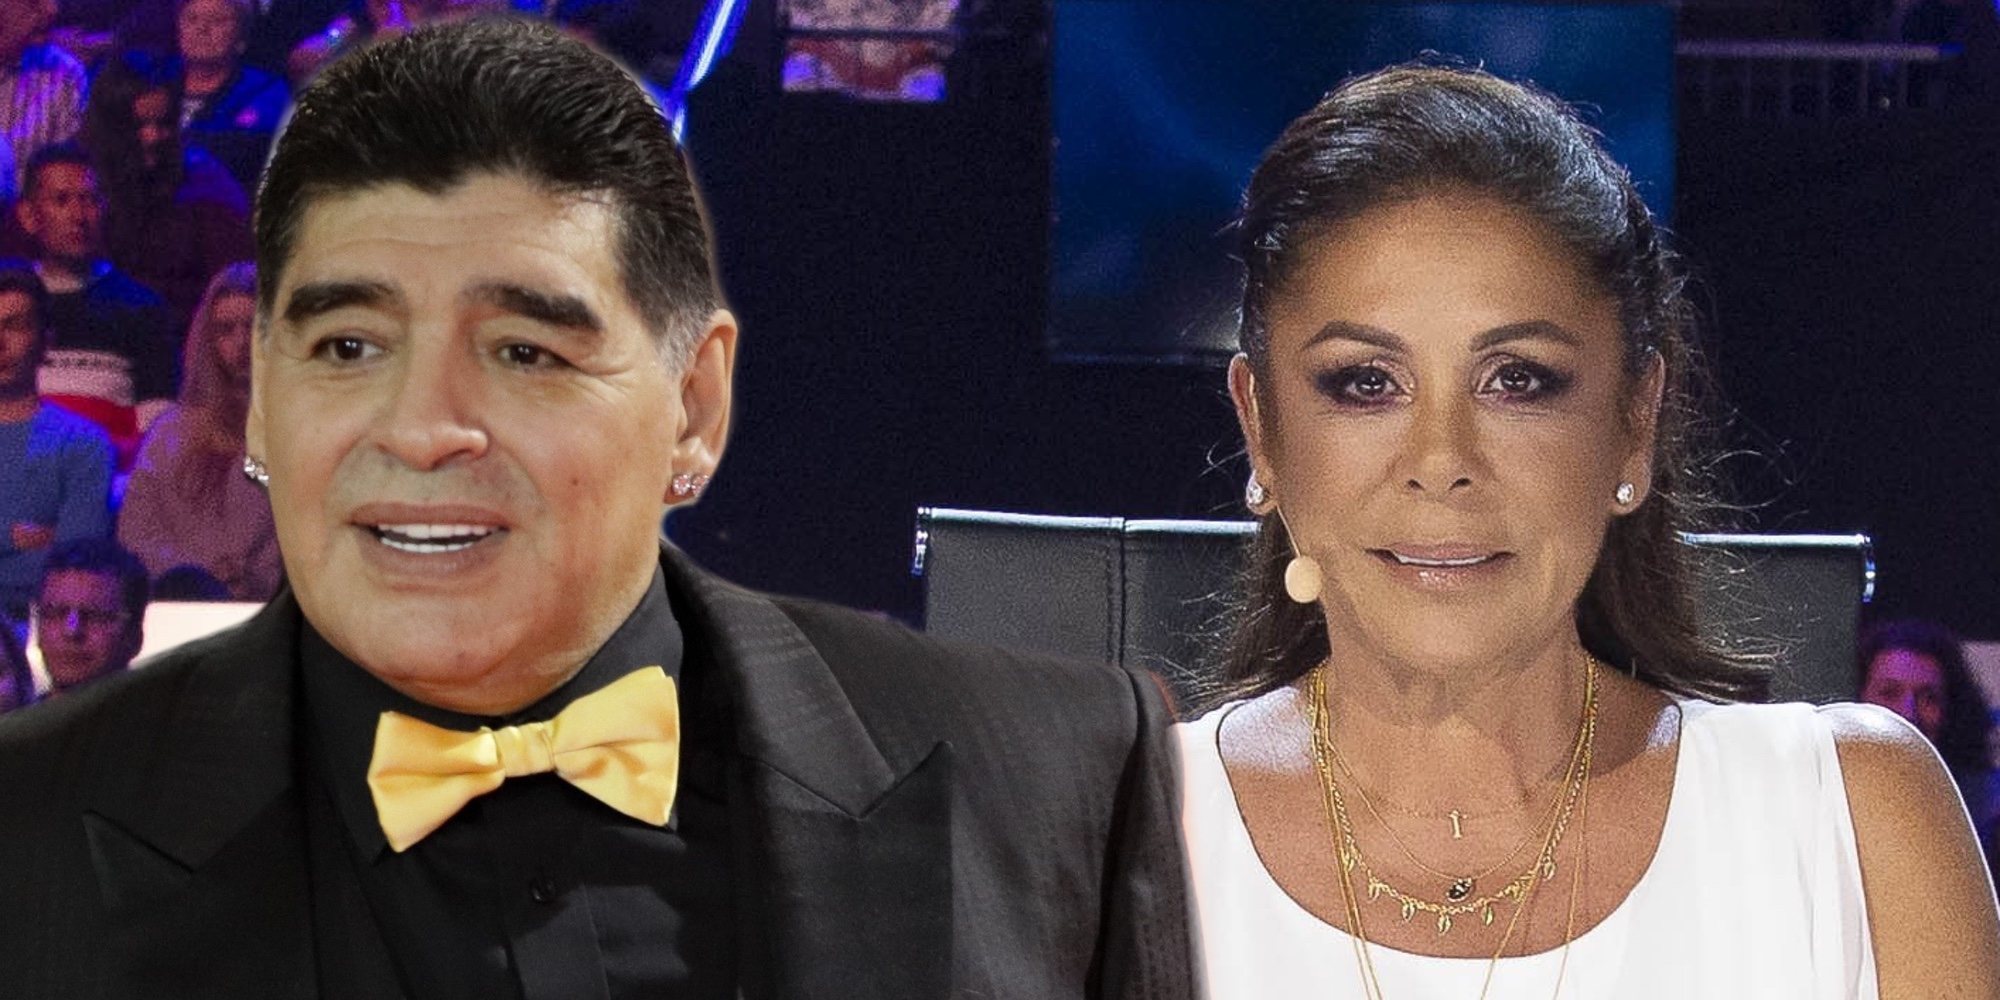 Diego Armando Maradona quiso tener un vis a vis con Isabel Pantoja